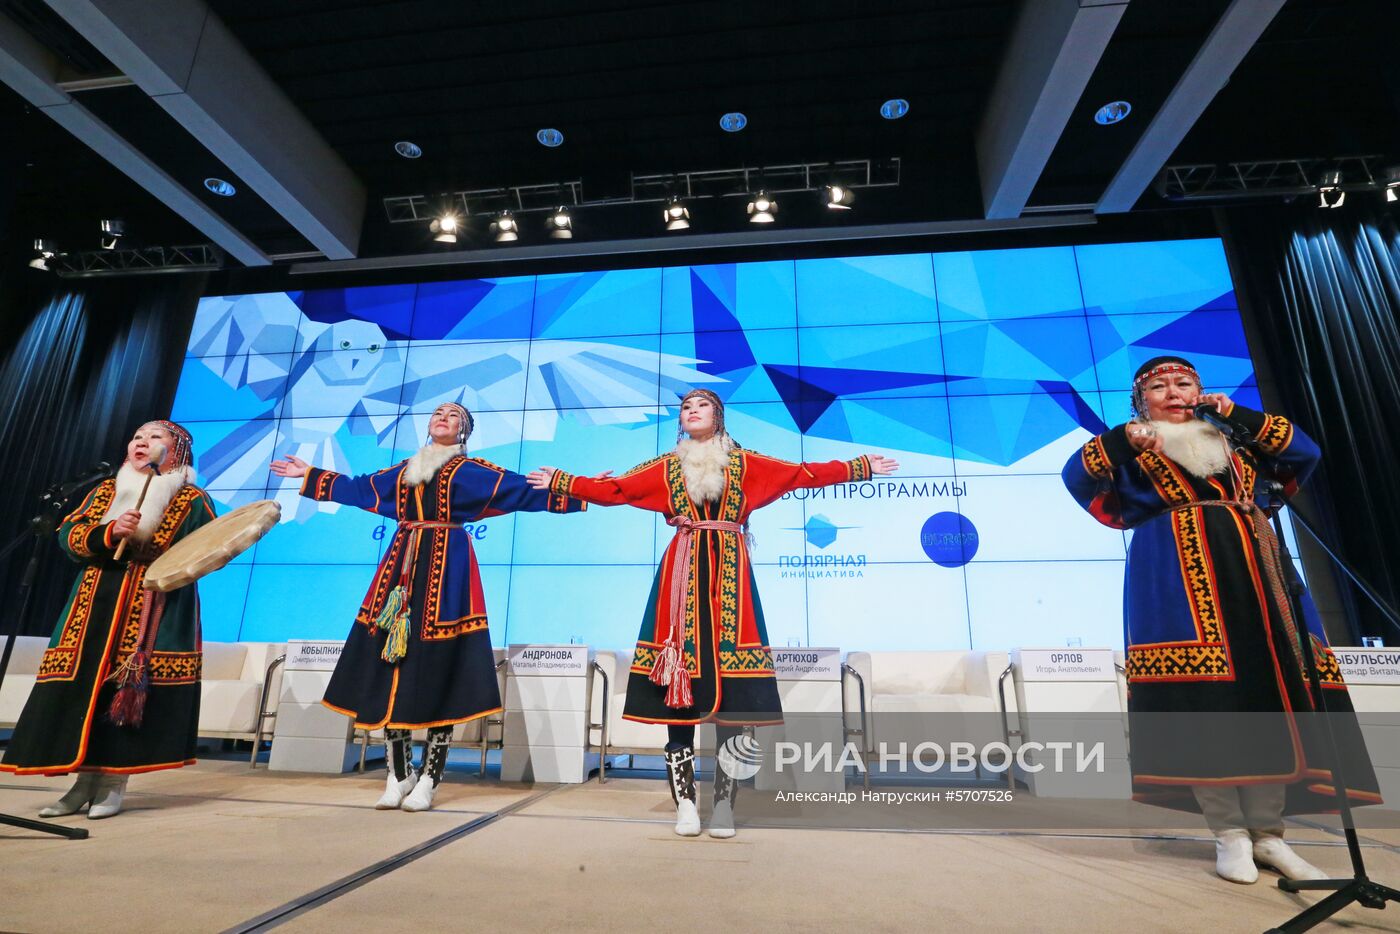 Федеральный арктический форум "Дни Арктики в Москве"